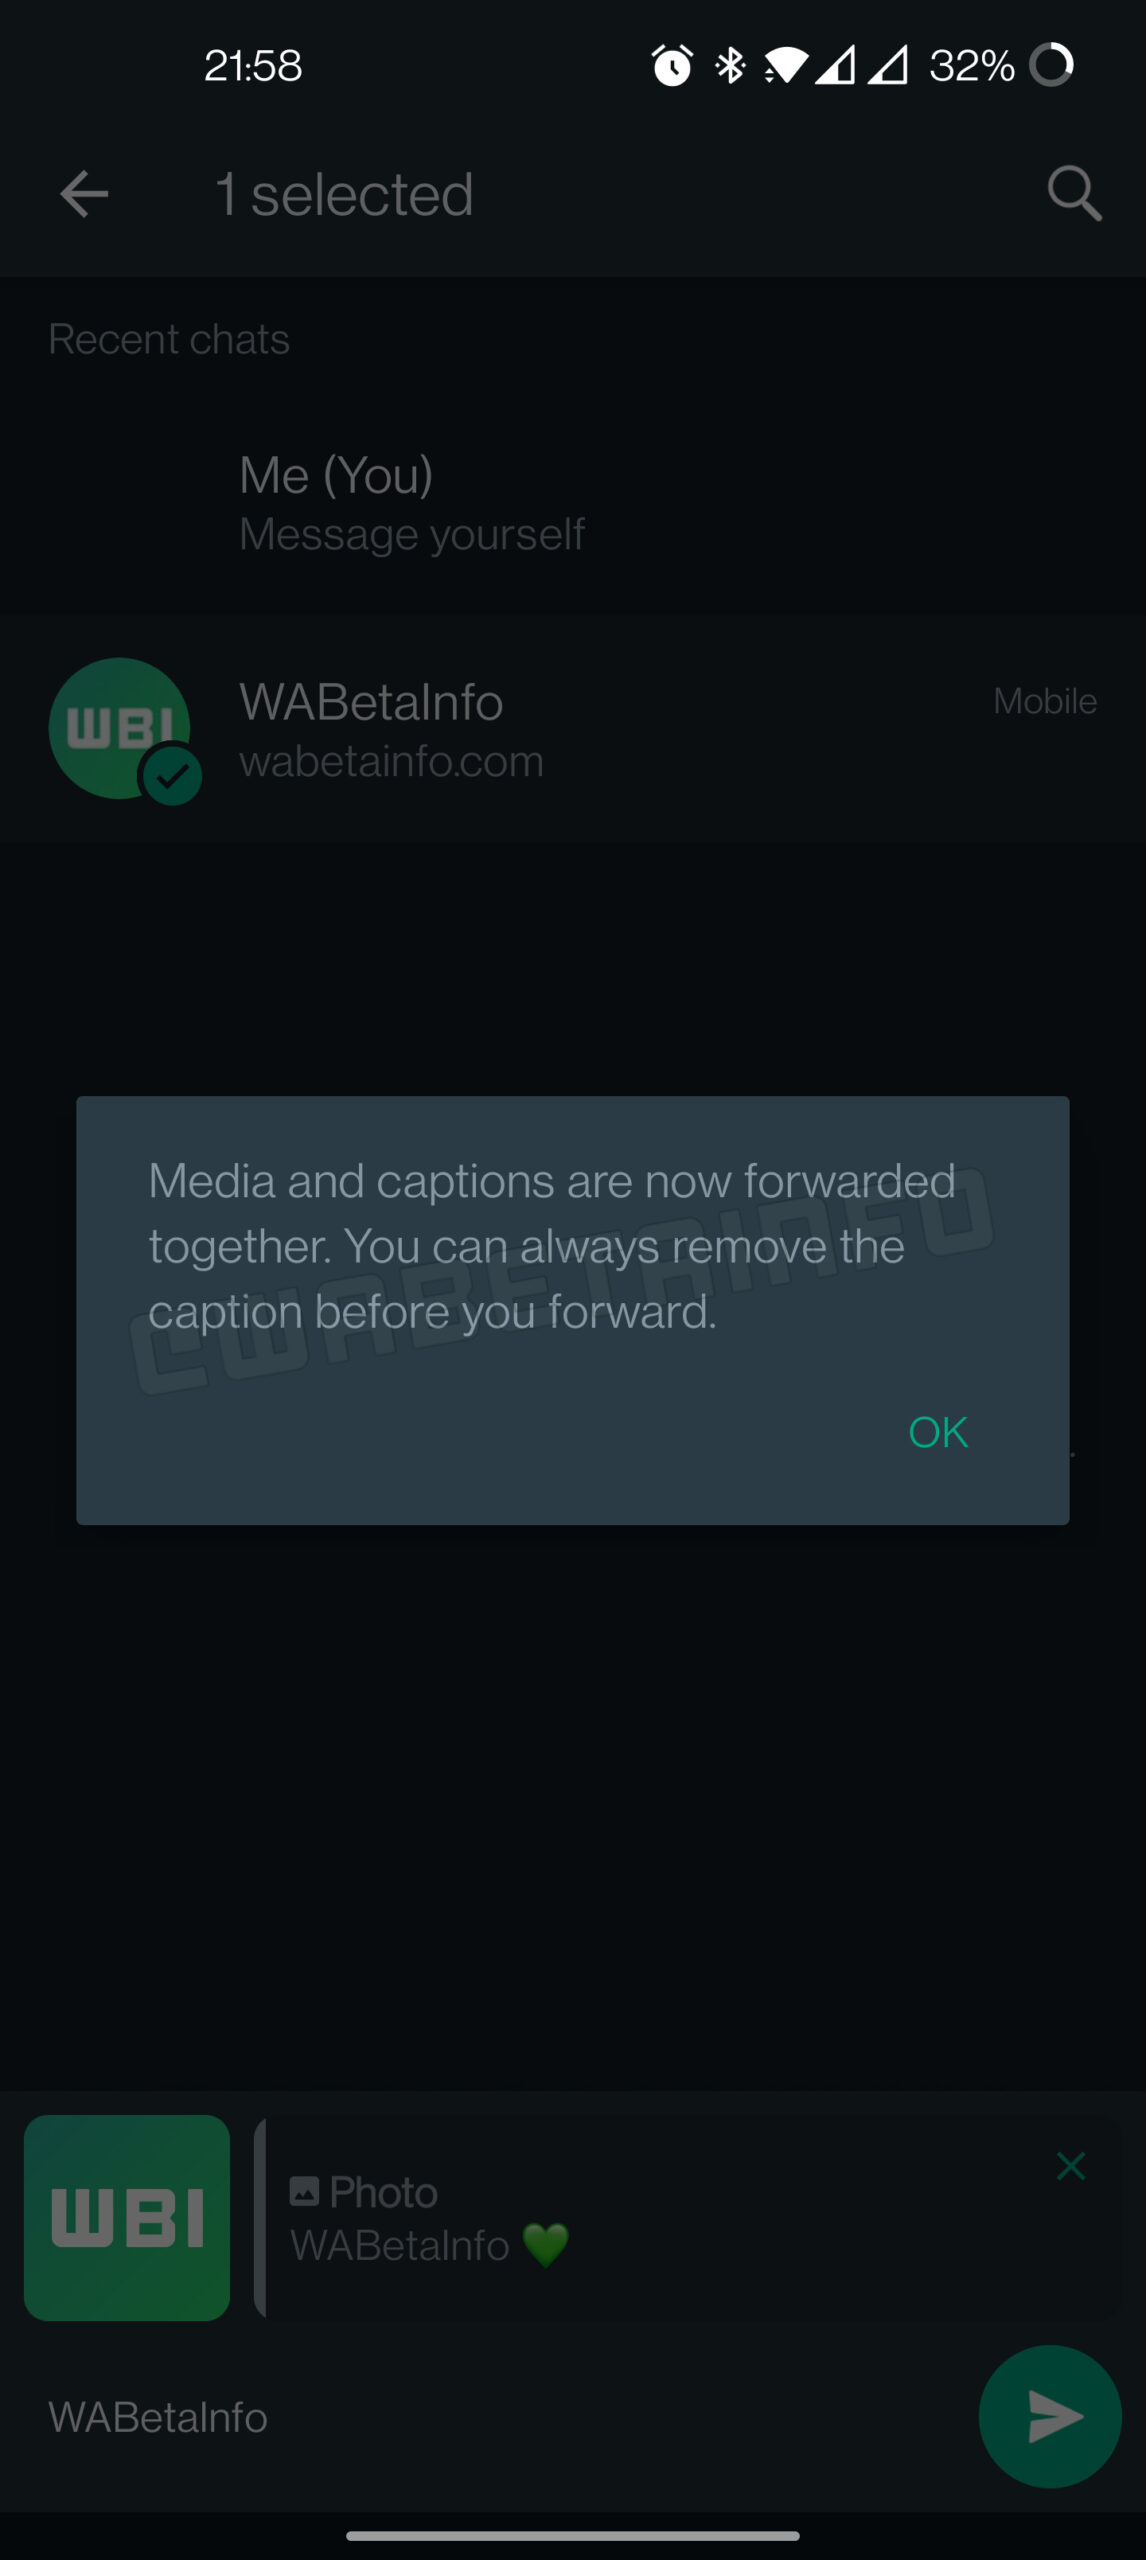 2 ÄNDERUNGEN an den Untertiteln von WhatsApp SECRET iPhone Android Now